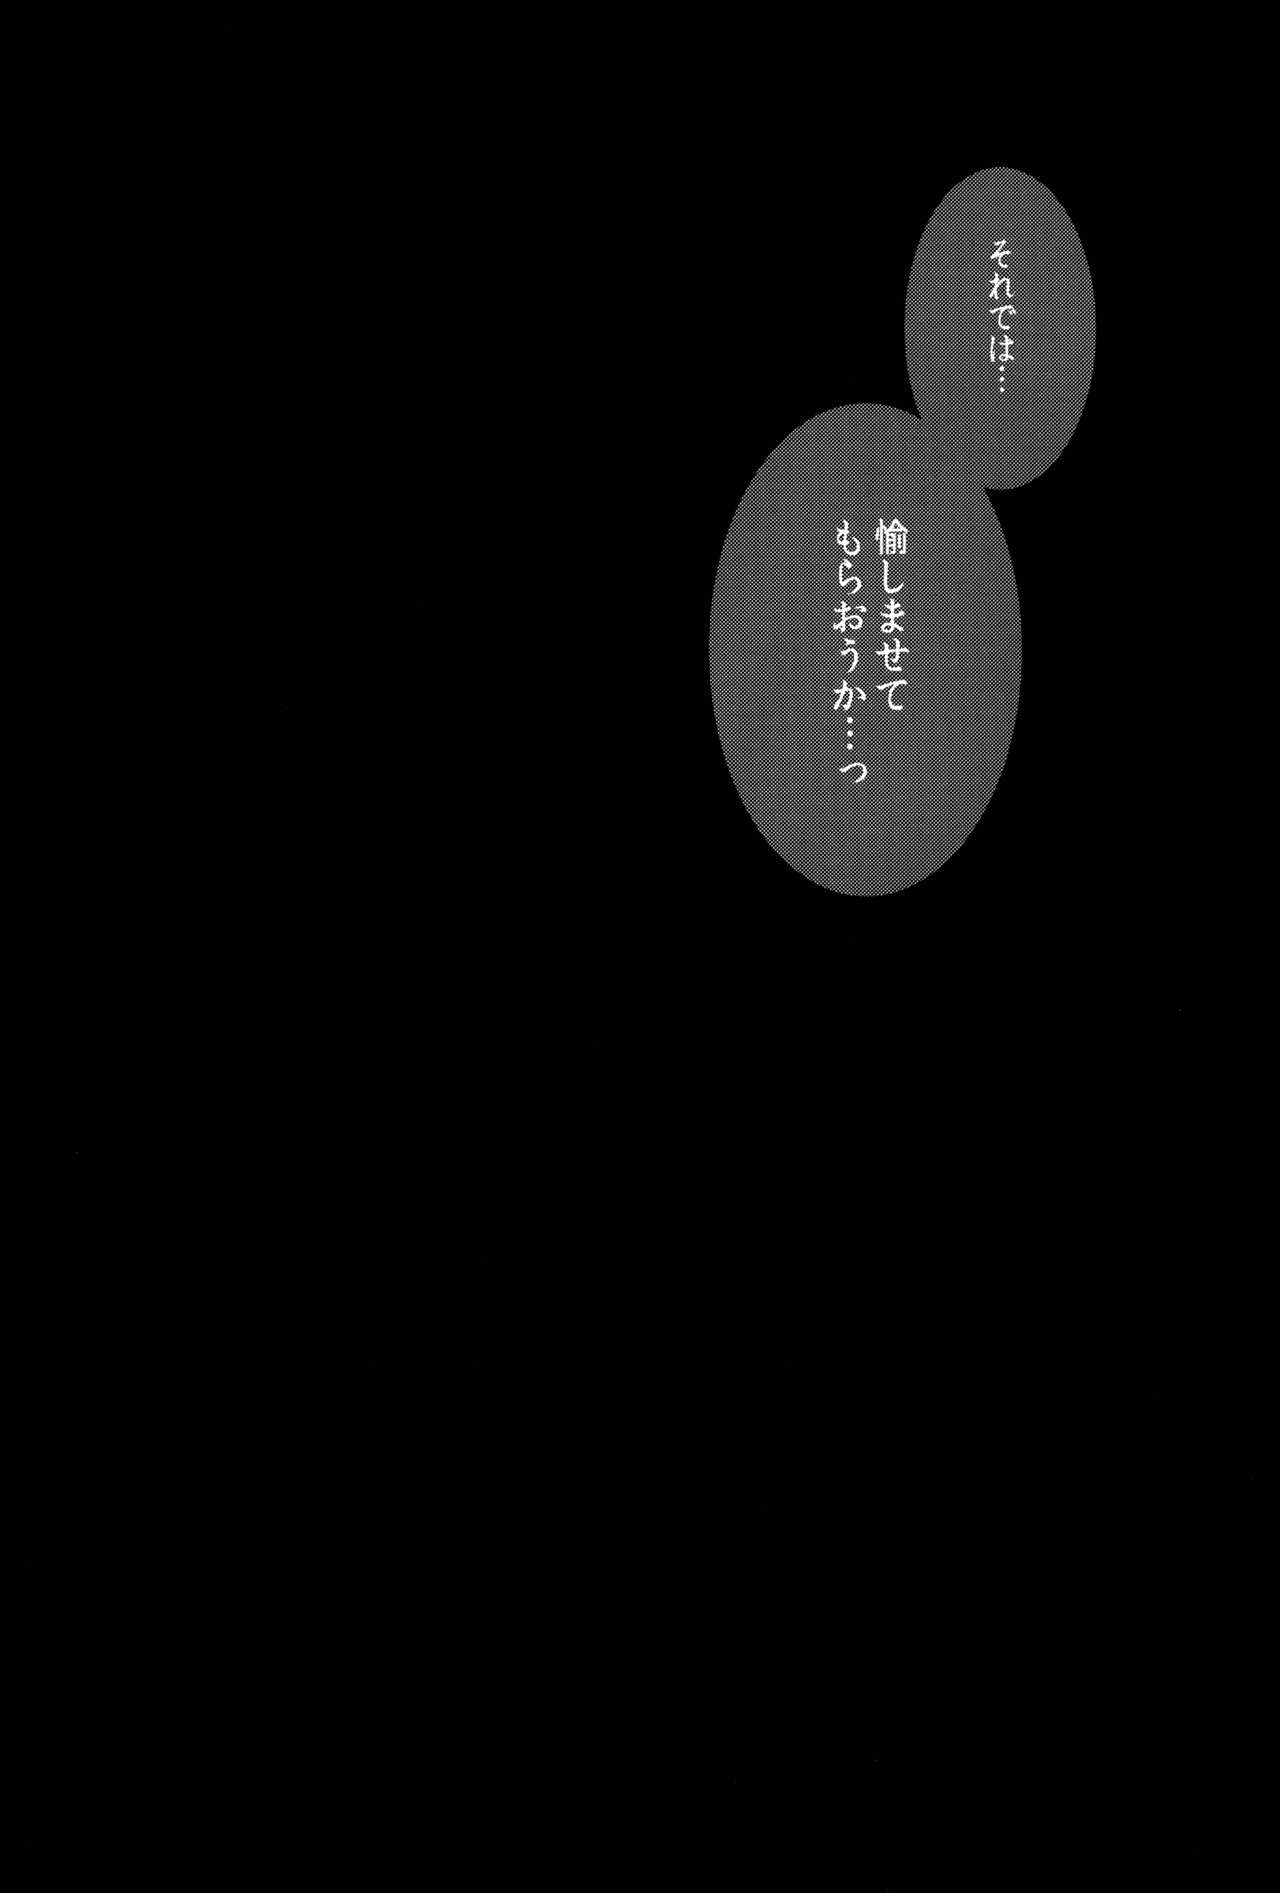 (歌姫庭園10) [こっそり隠れ処 (あいらんど)] Re:M@STER IDOL ver.TAKANE (アイドルマスター)